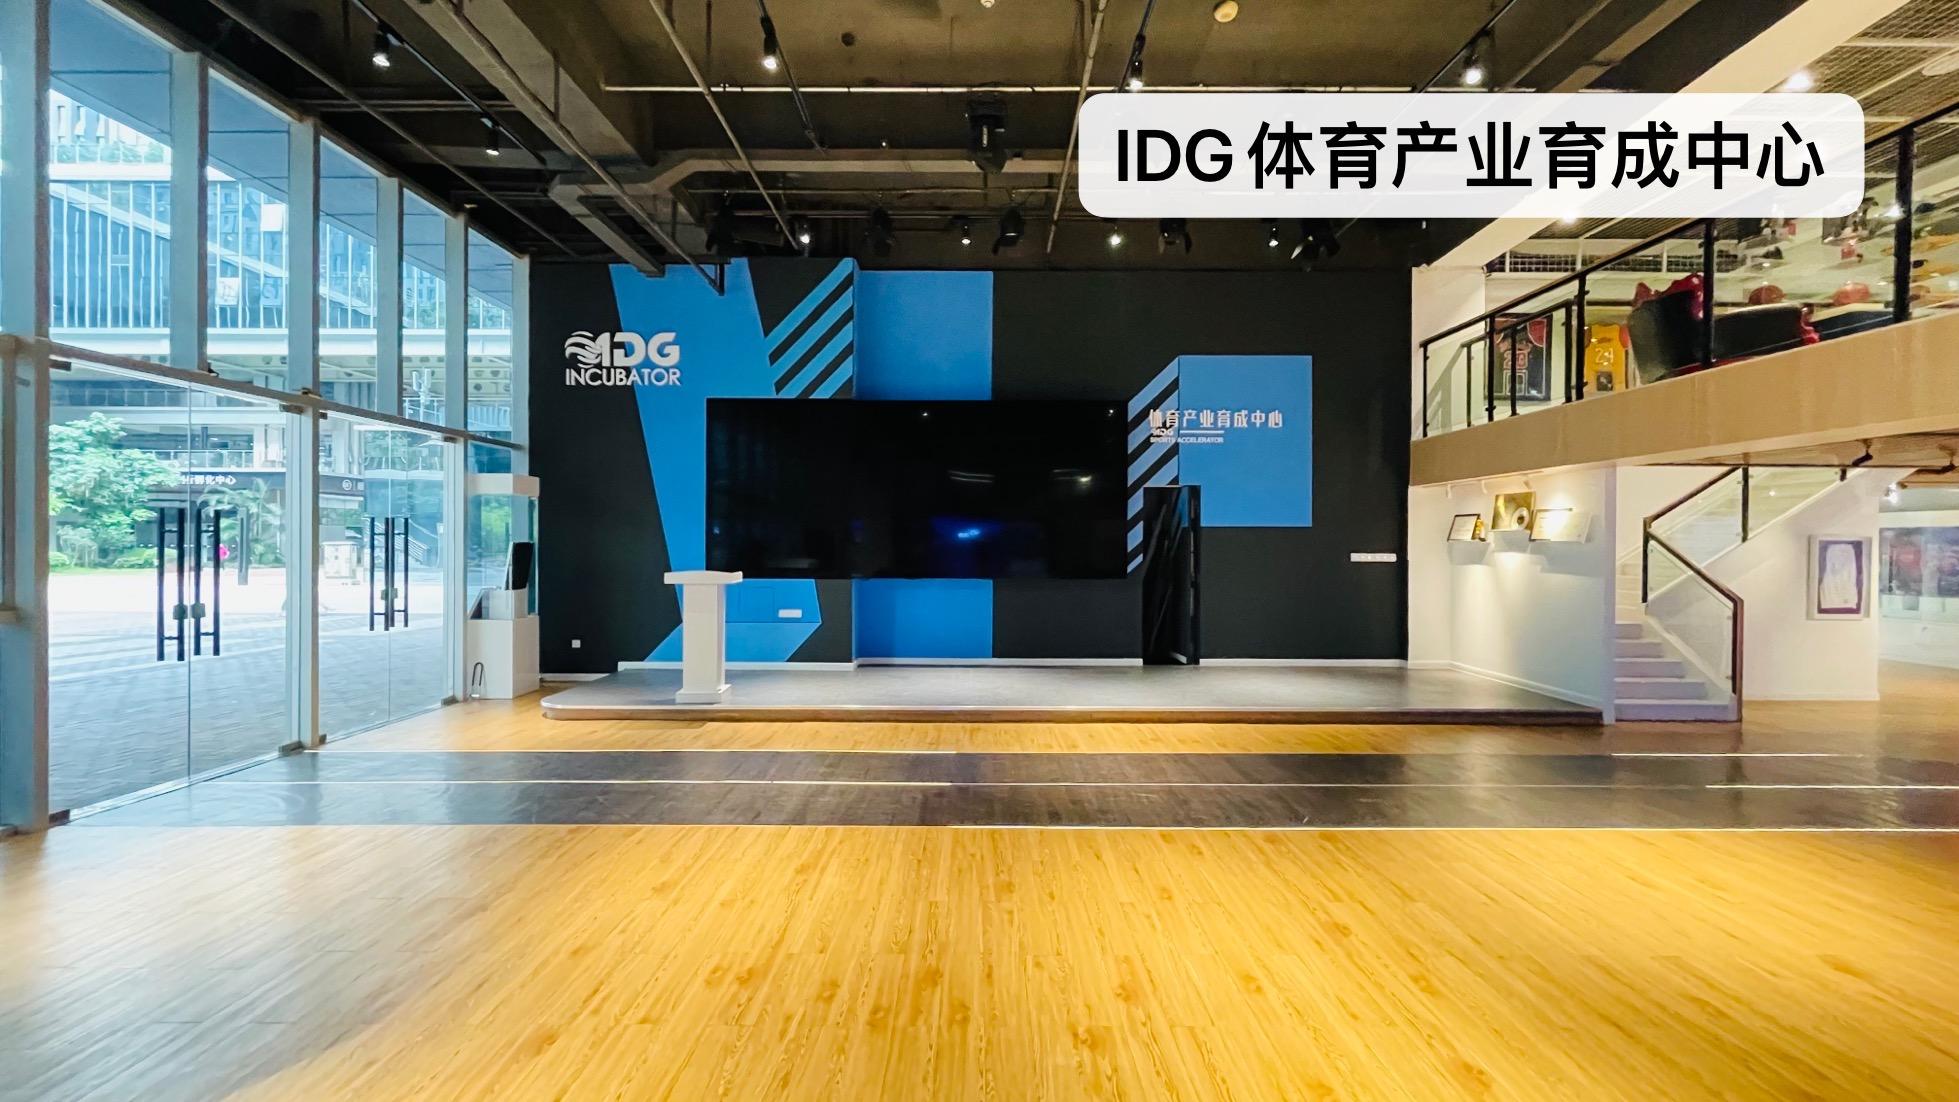 深圳创意园区最大容纳200人的会议场地|IDG体育产业育成中心的价格与联系方式